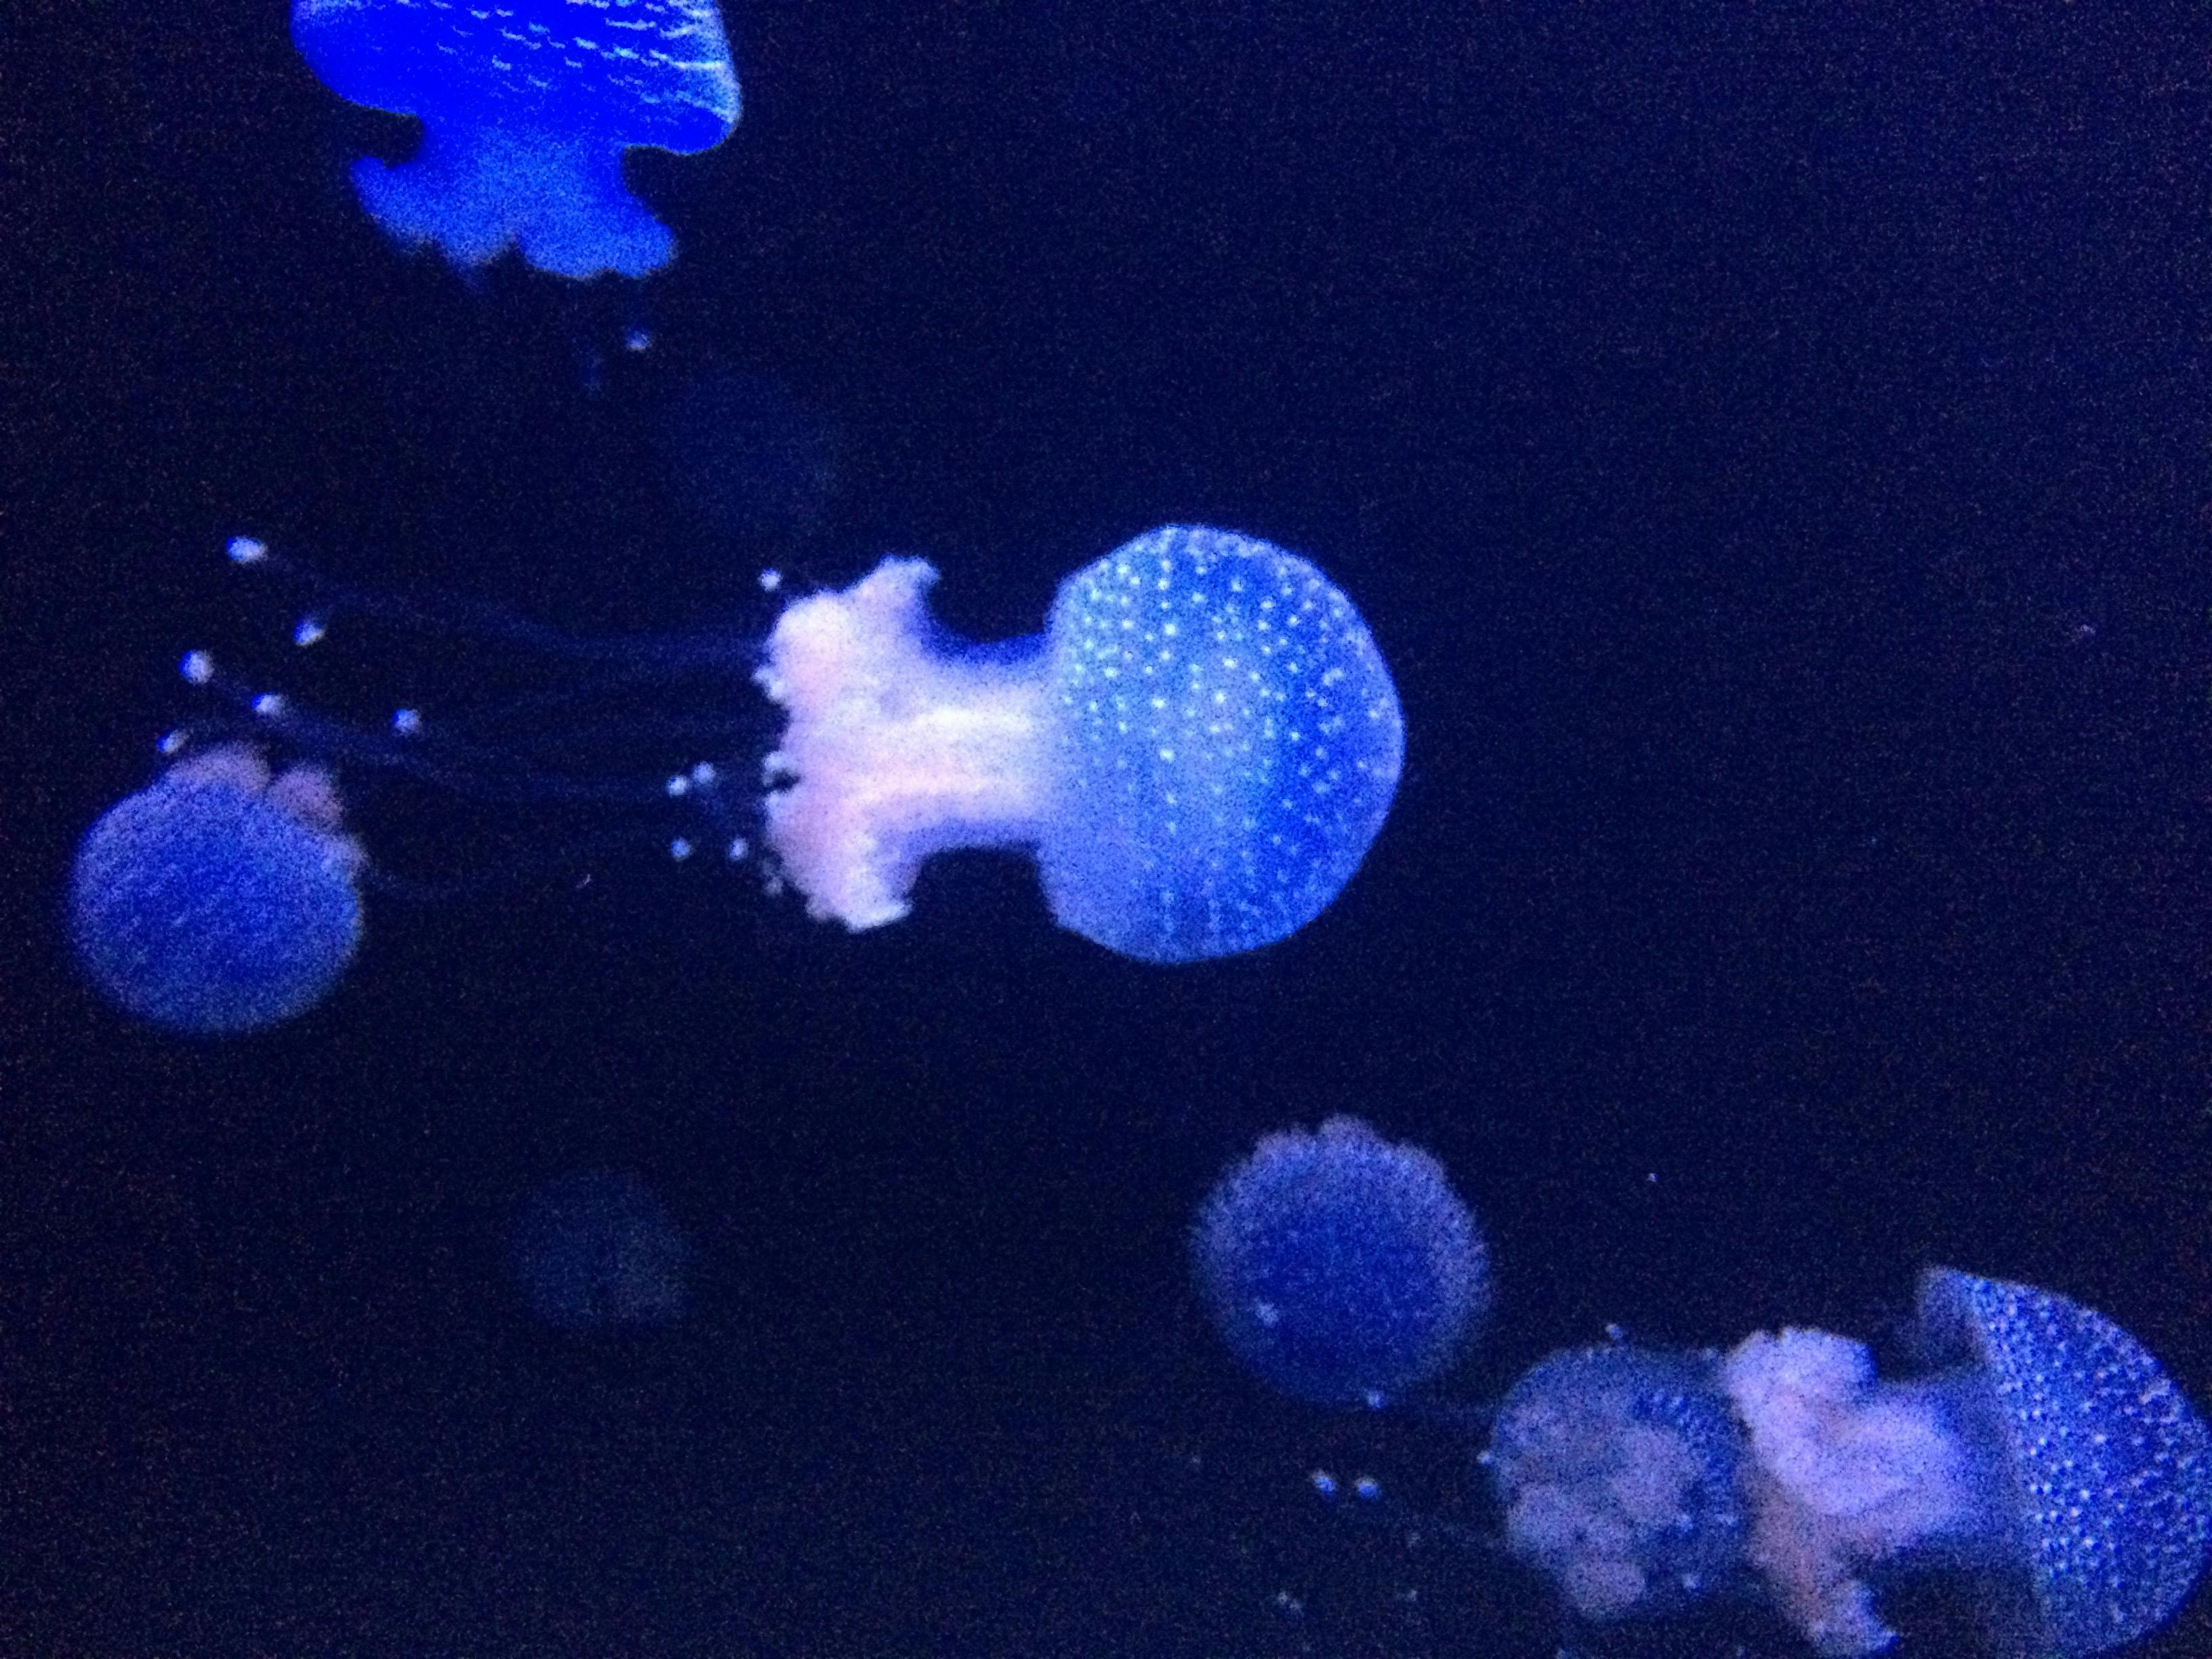 Free stock photo of Ocean medusa